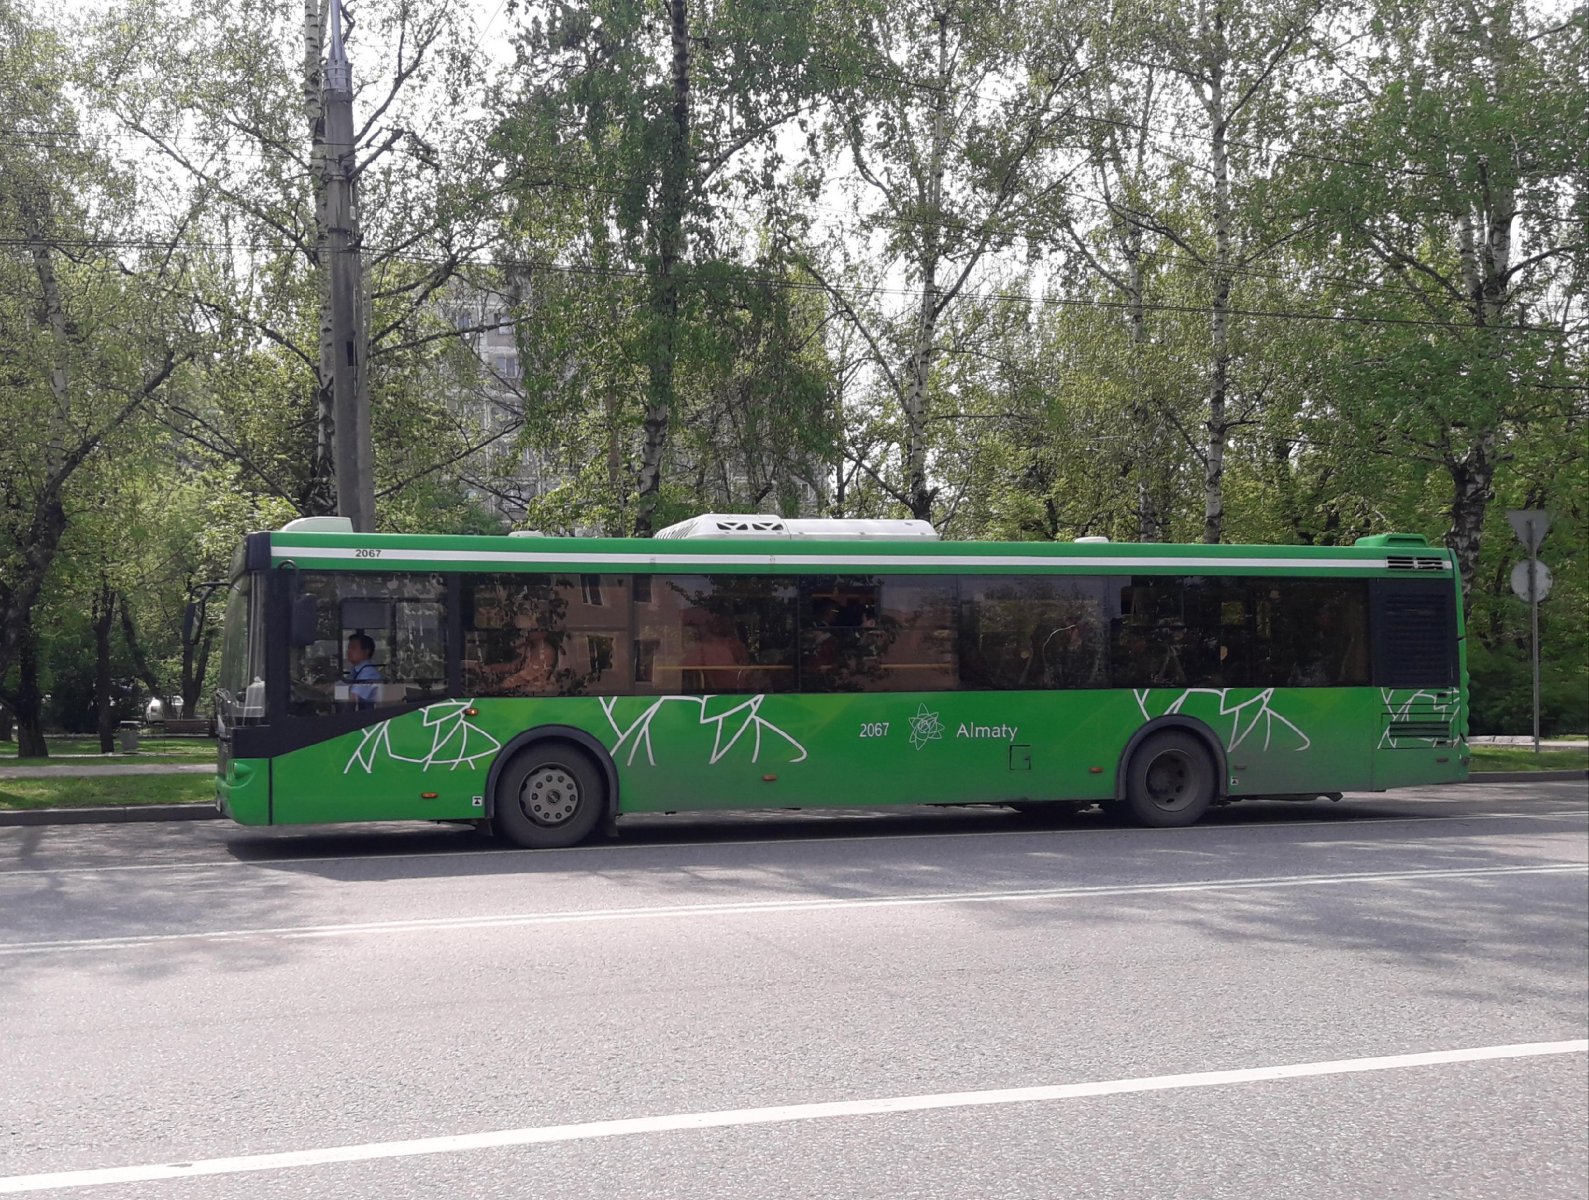 Автобус 12а